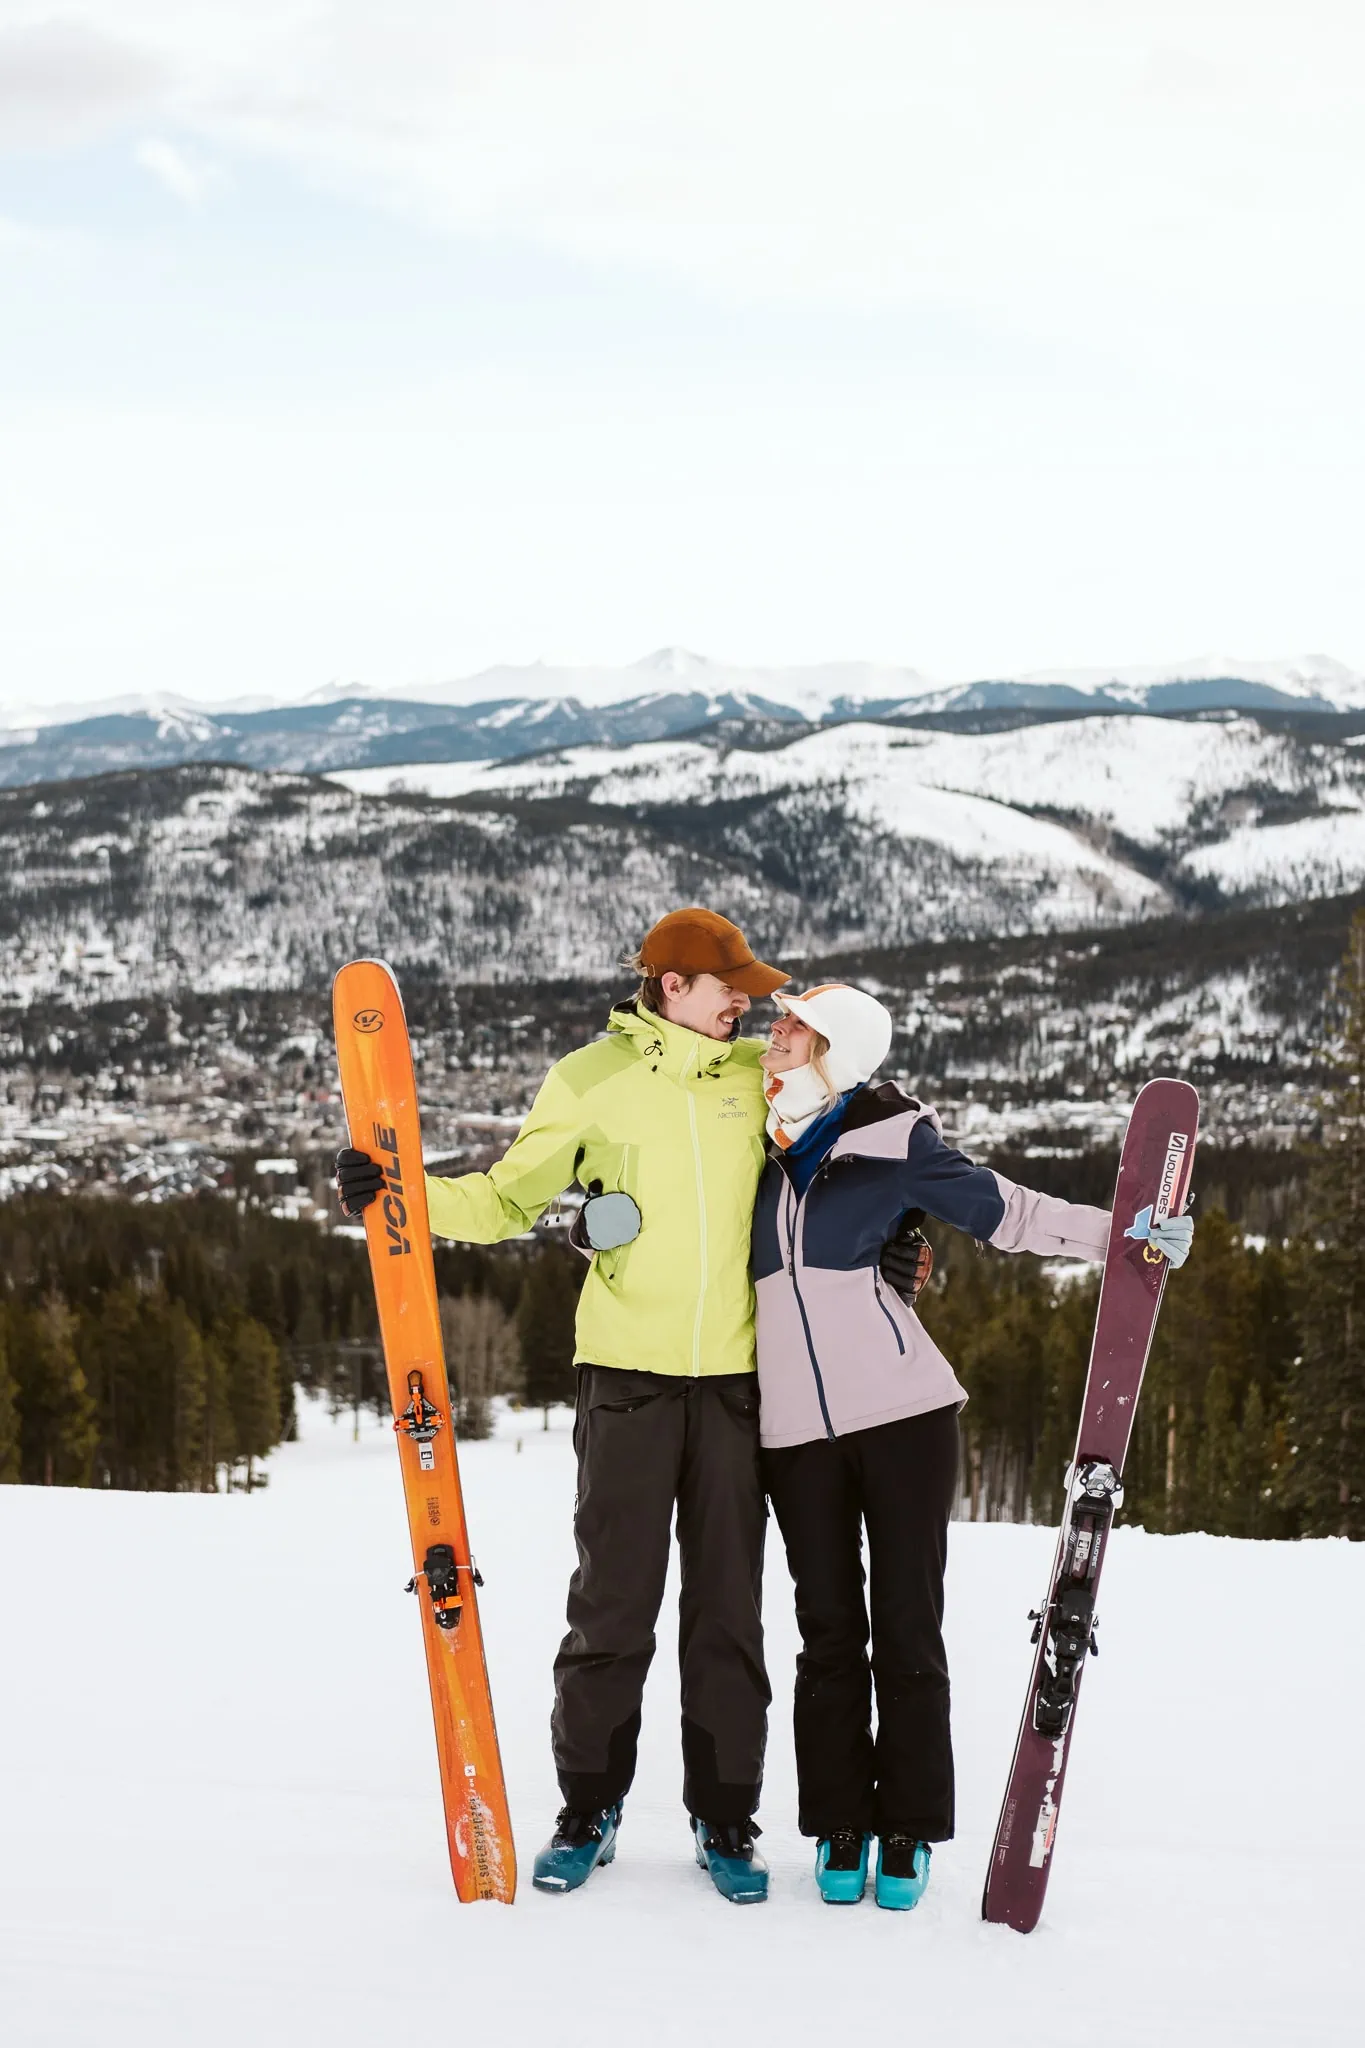 Engagement photos at Breckenridge Ski Resort